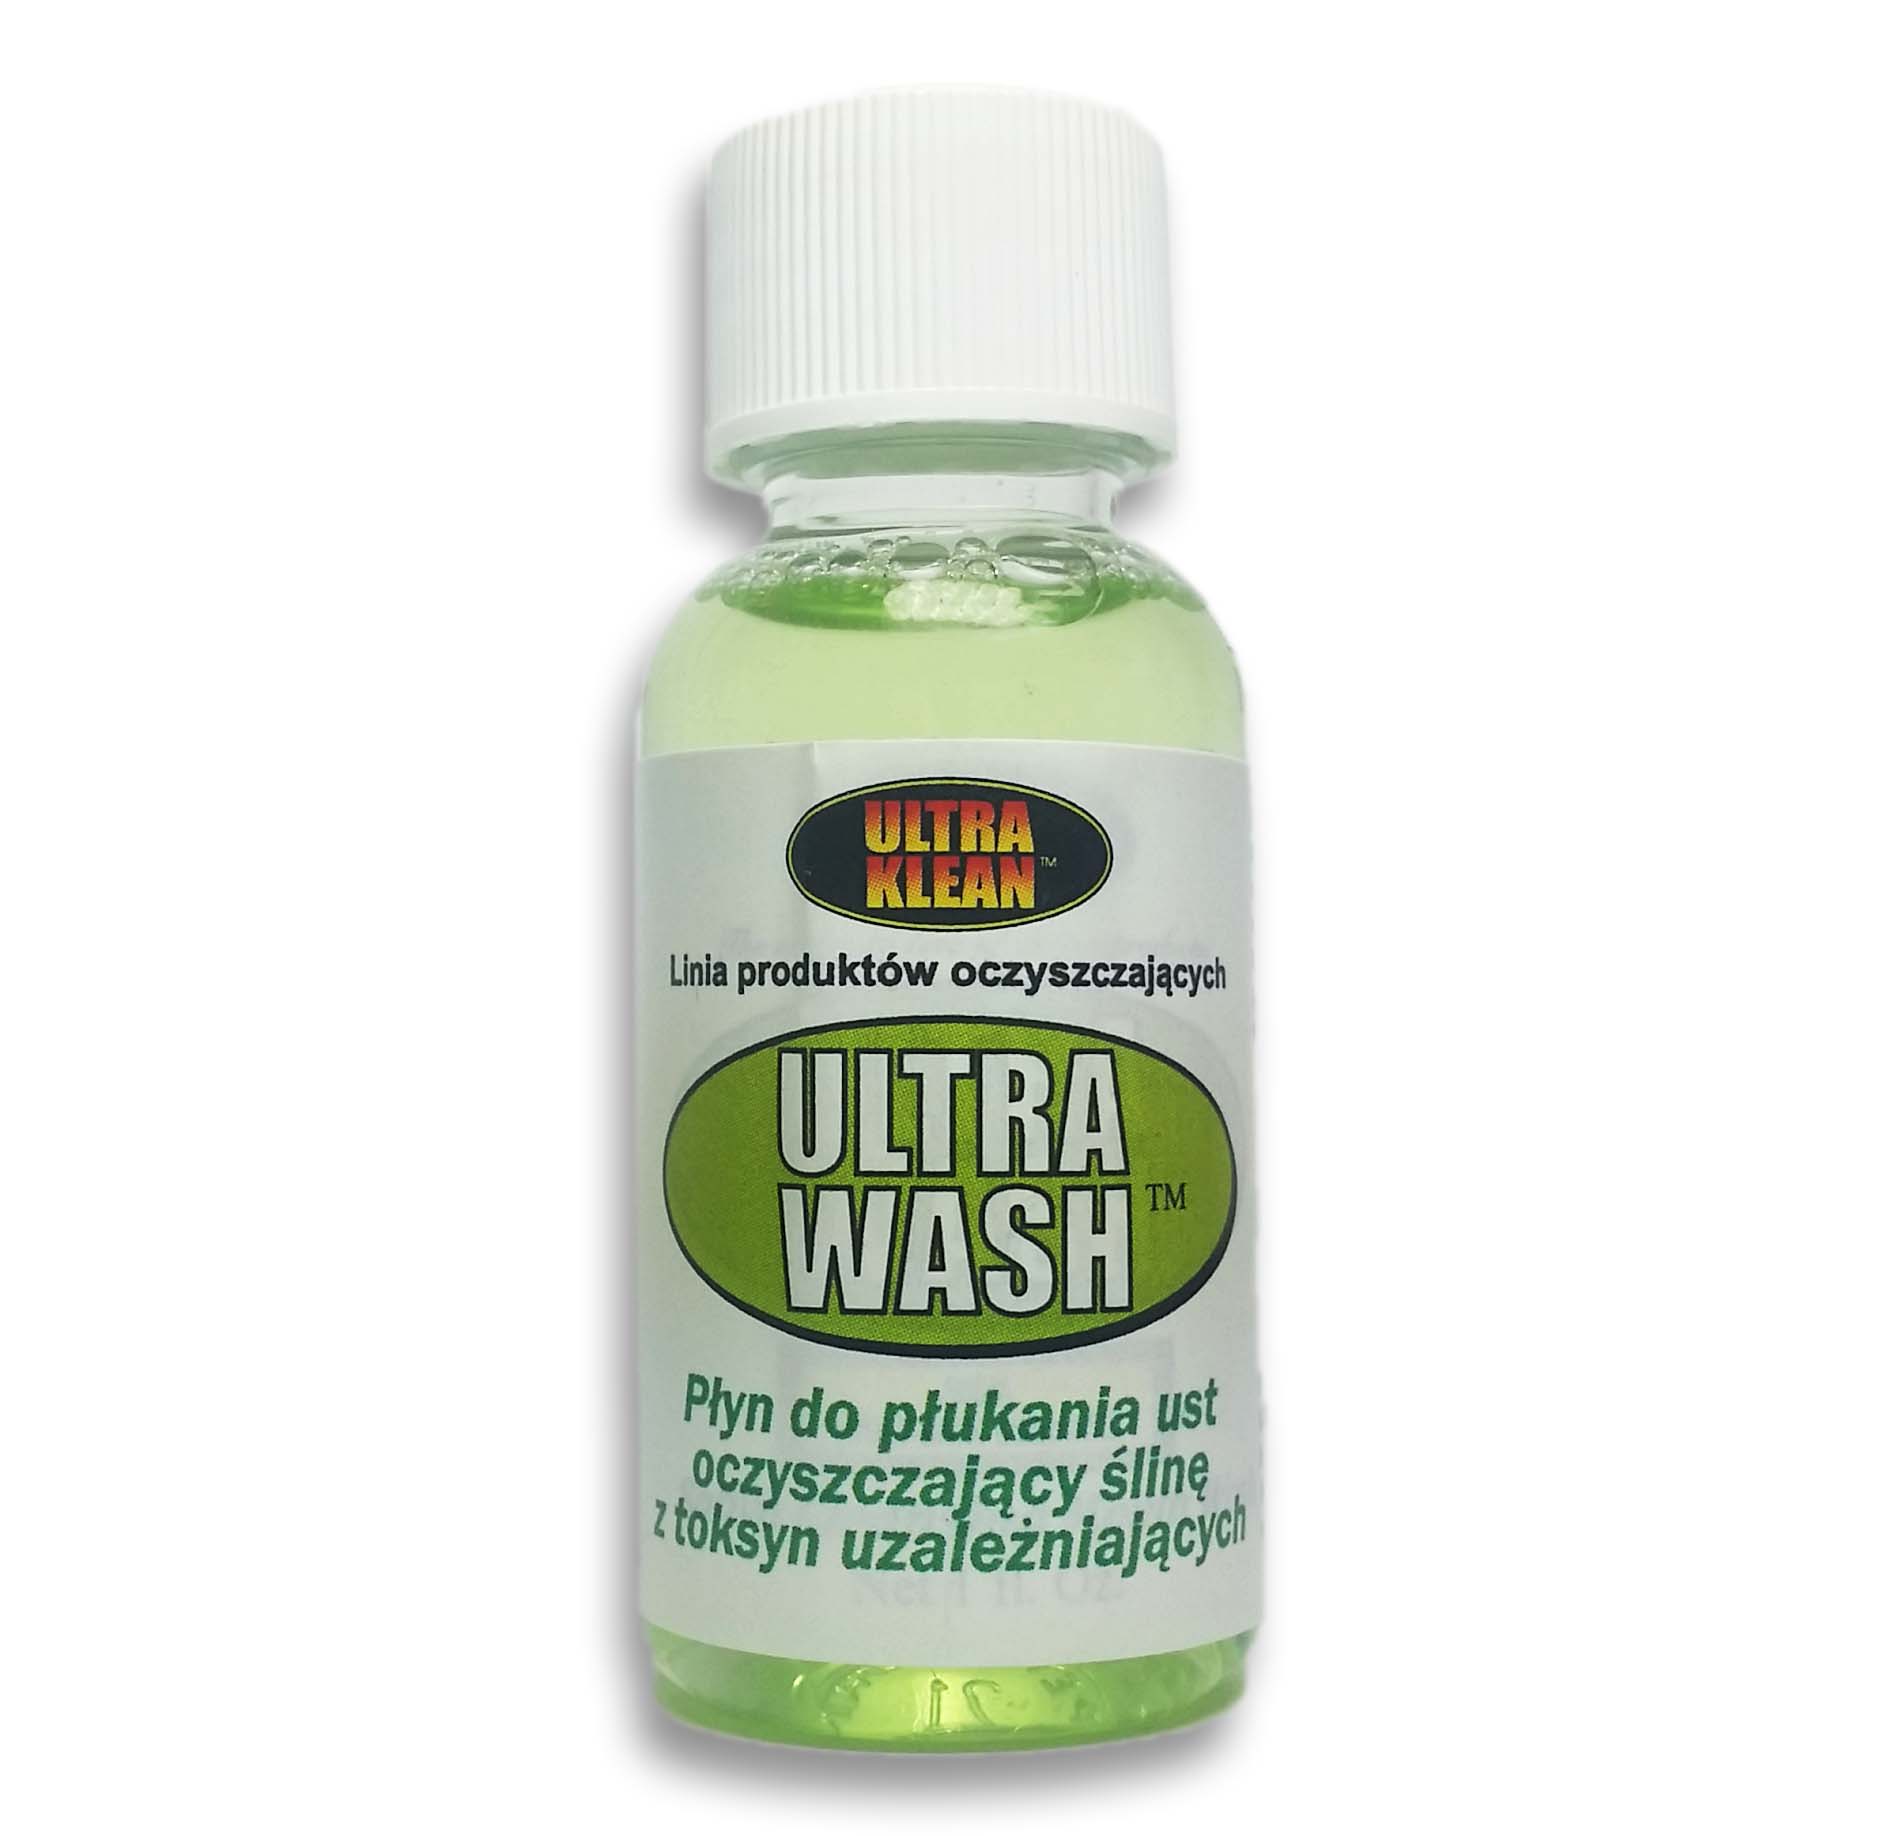 Ultra Wash - Neutralizuje substancje psychoaktywne w ślinie